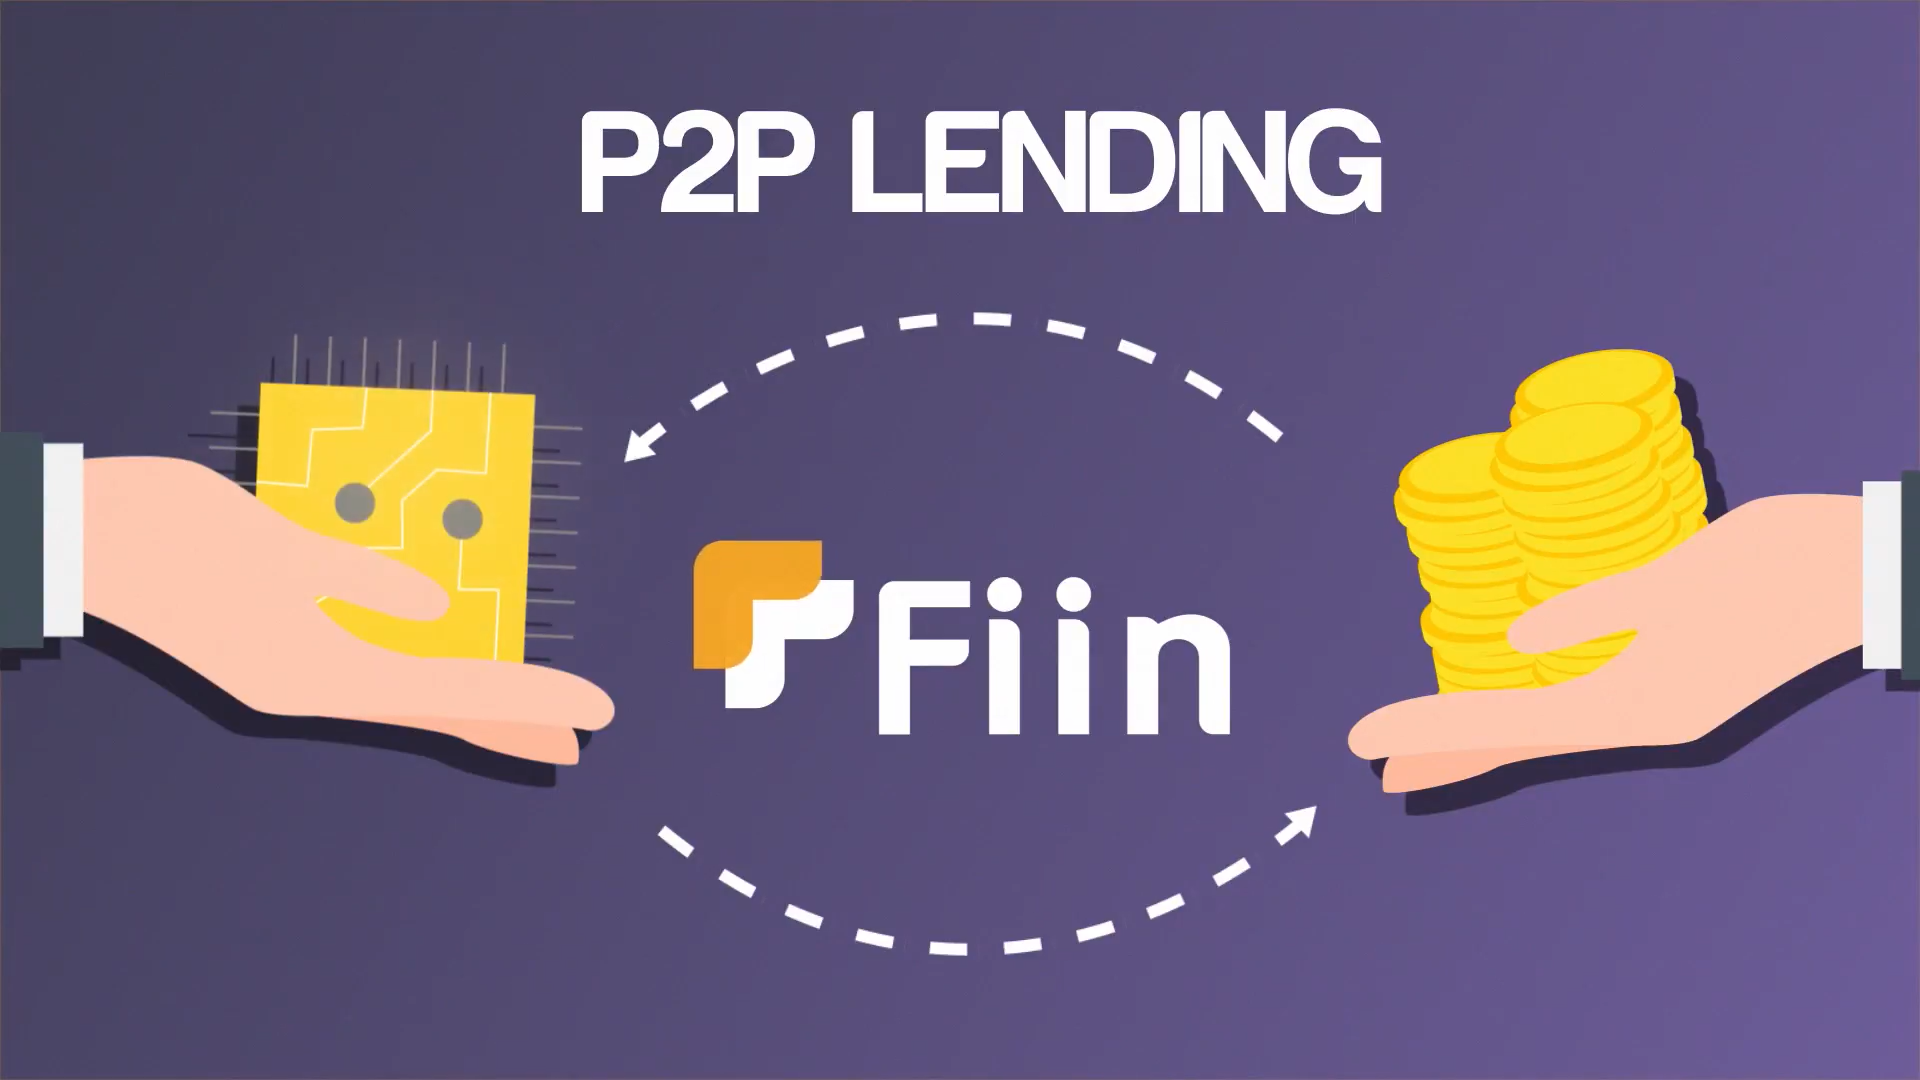 Tại Việt Nam, Fiin là ừng dụng tiên phong trong lĩnh vực P2P Lending với cộng đồng hơn 300,000 người dùng trên toàn quốc